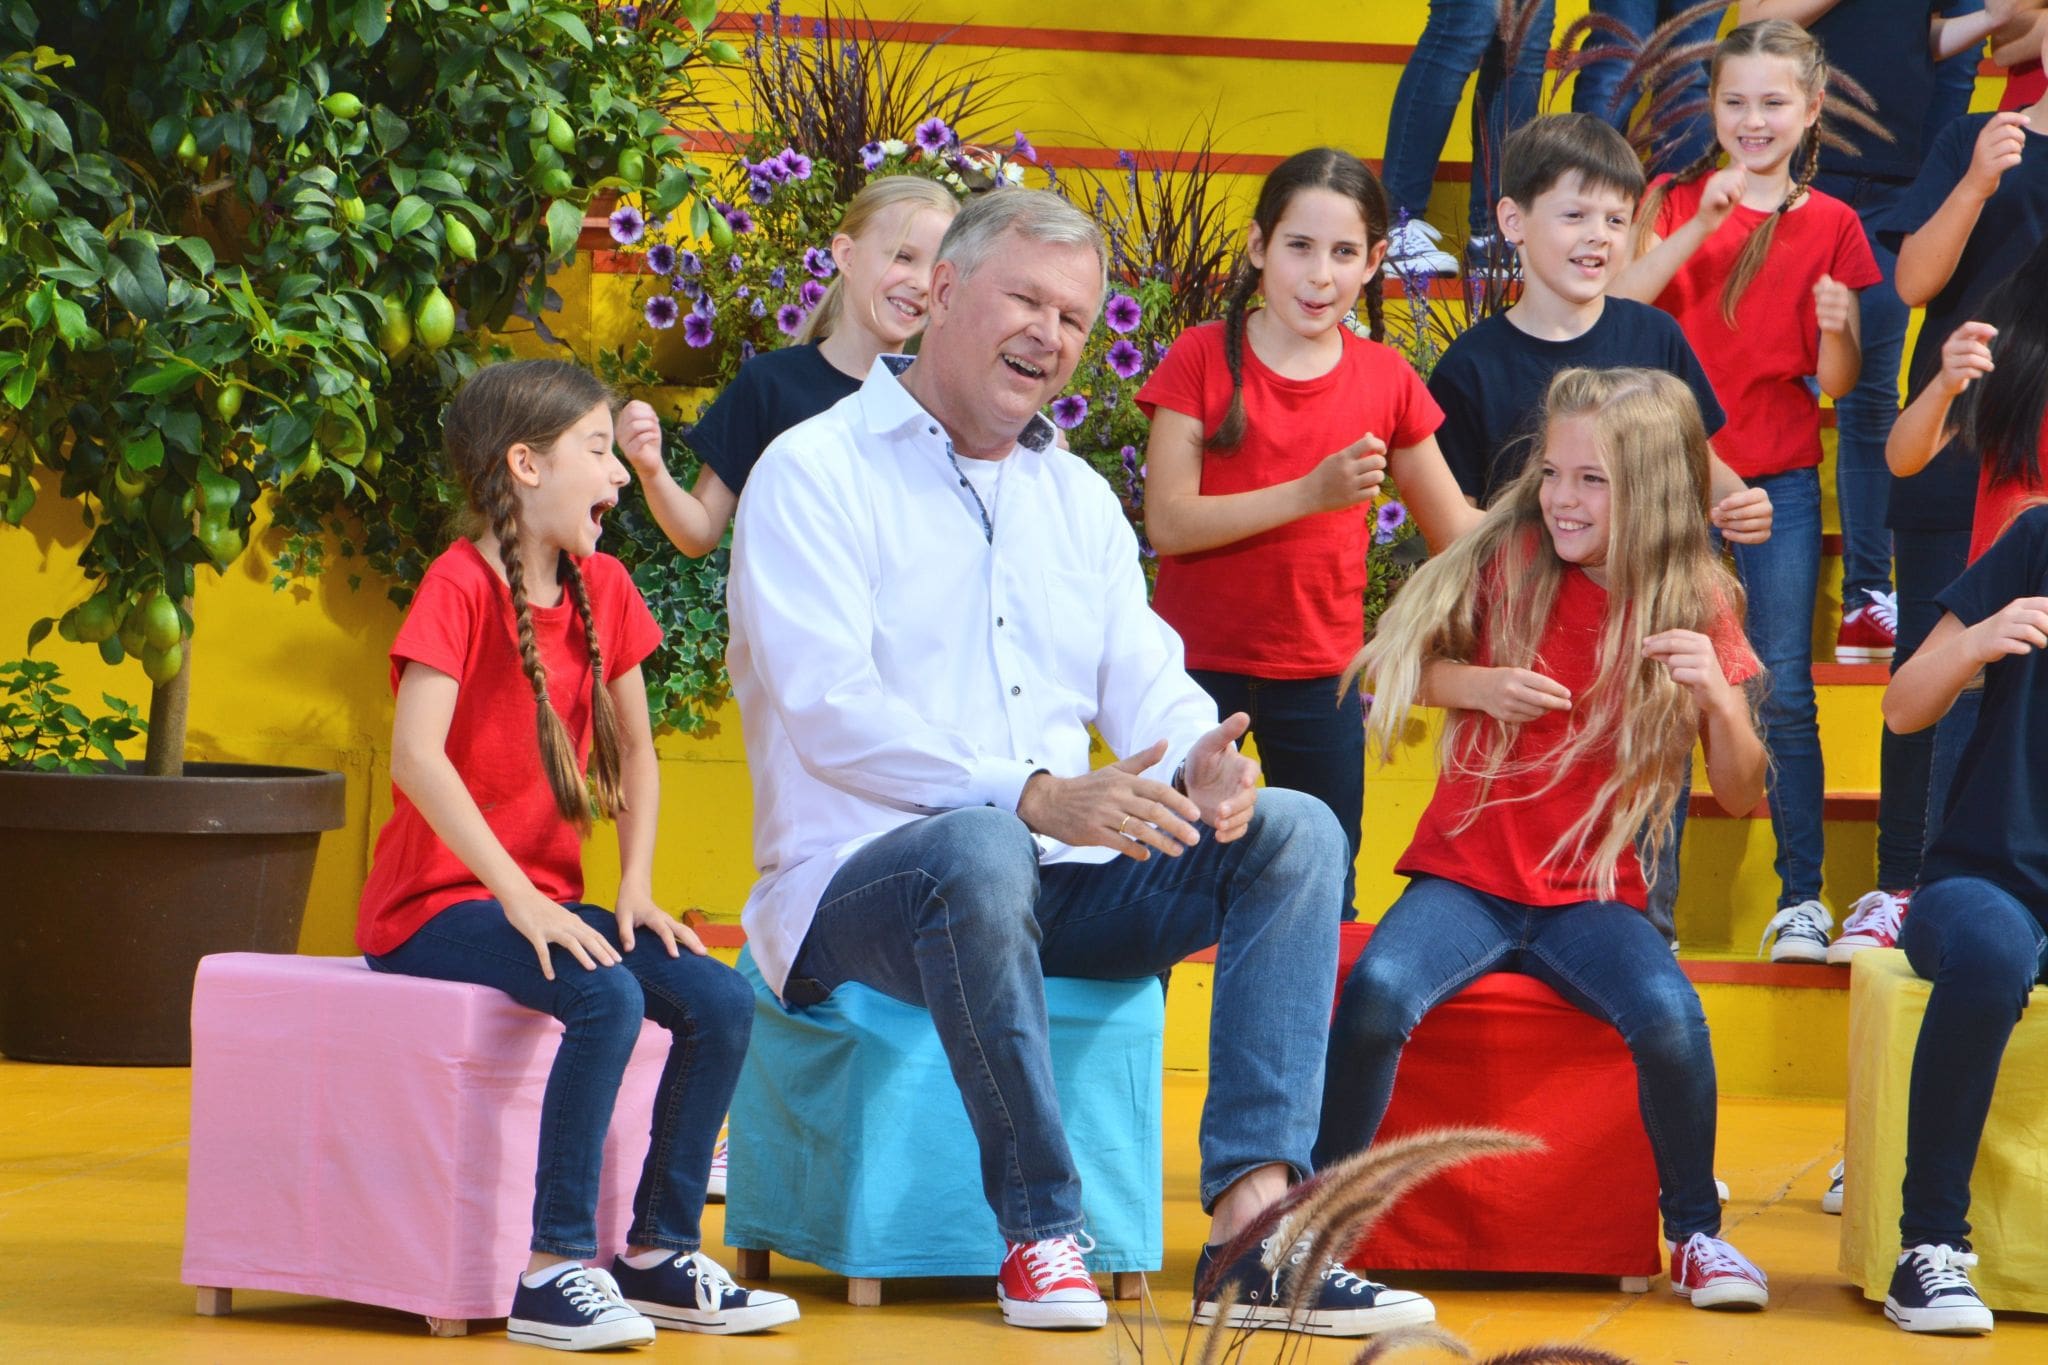 Mit den Earth Choir Kids geht der Kinderliedermacher Reinhard Horn am 11. September auf die Bühne. Foto - Verlag Kontakte